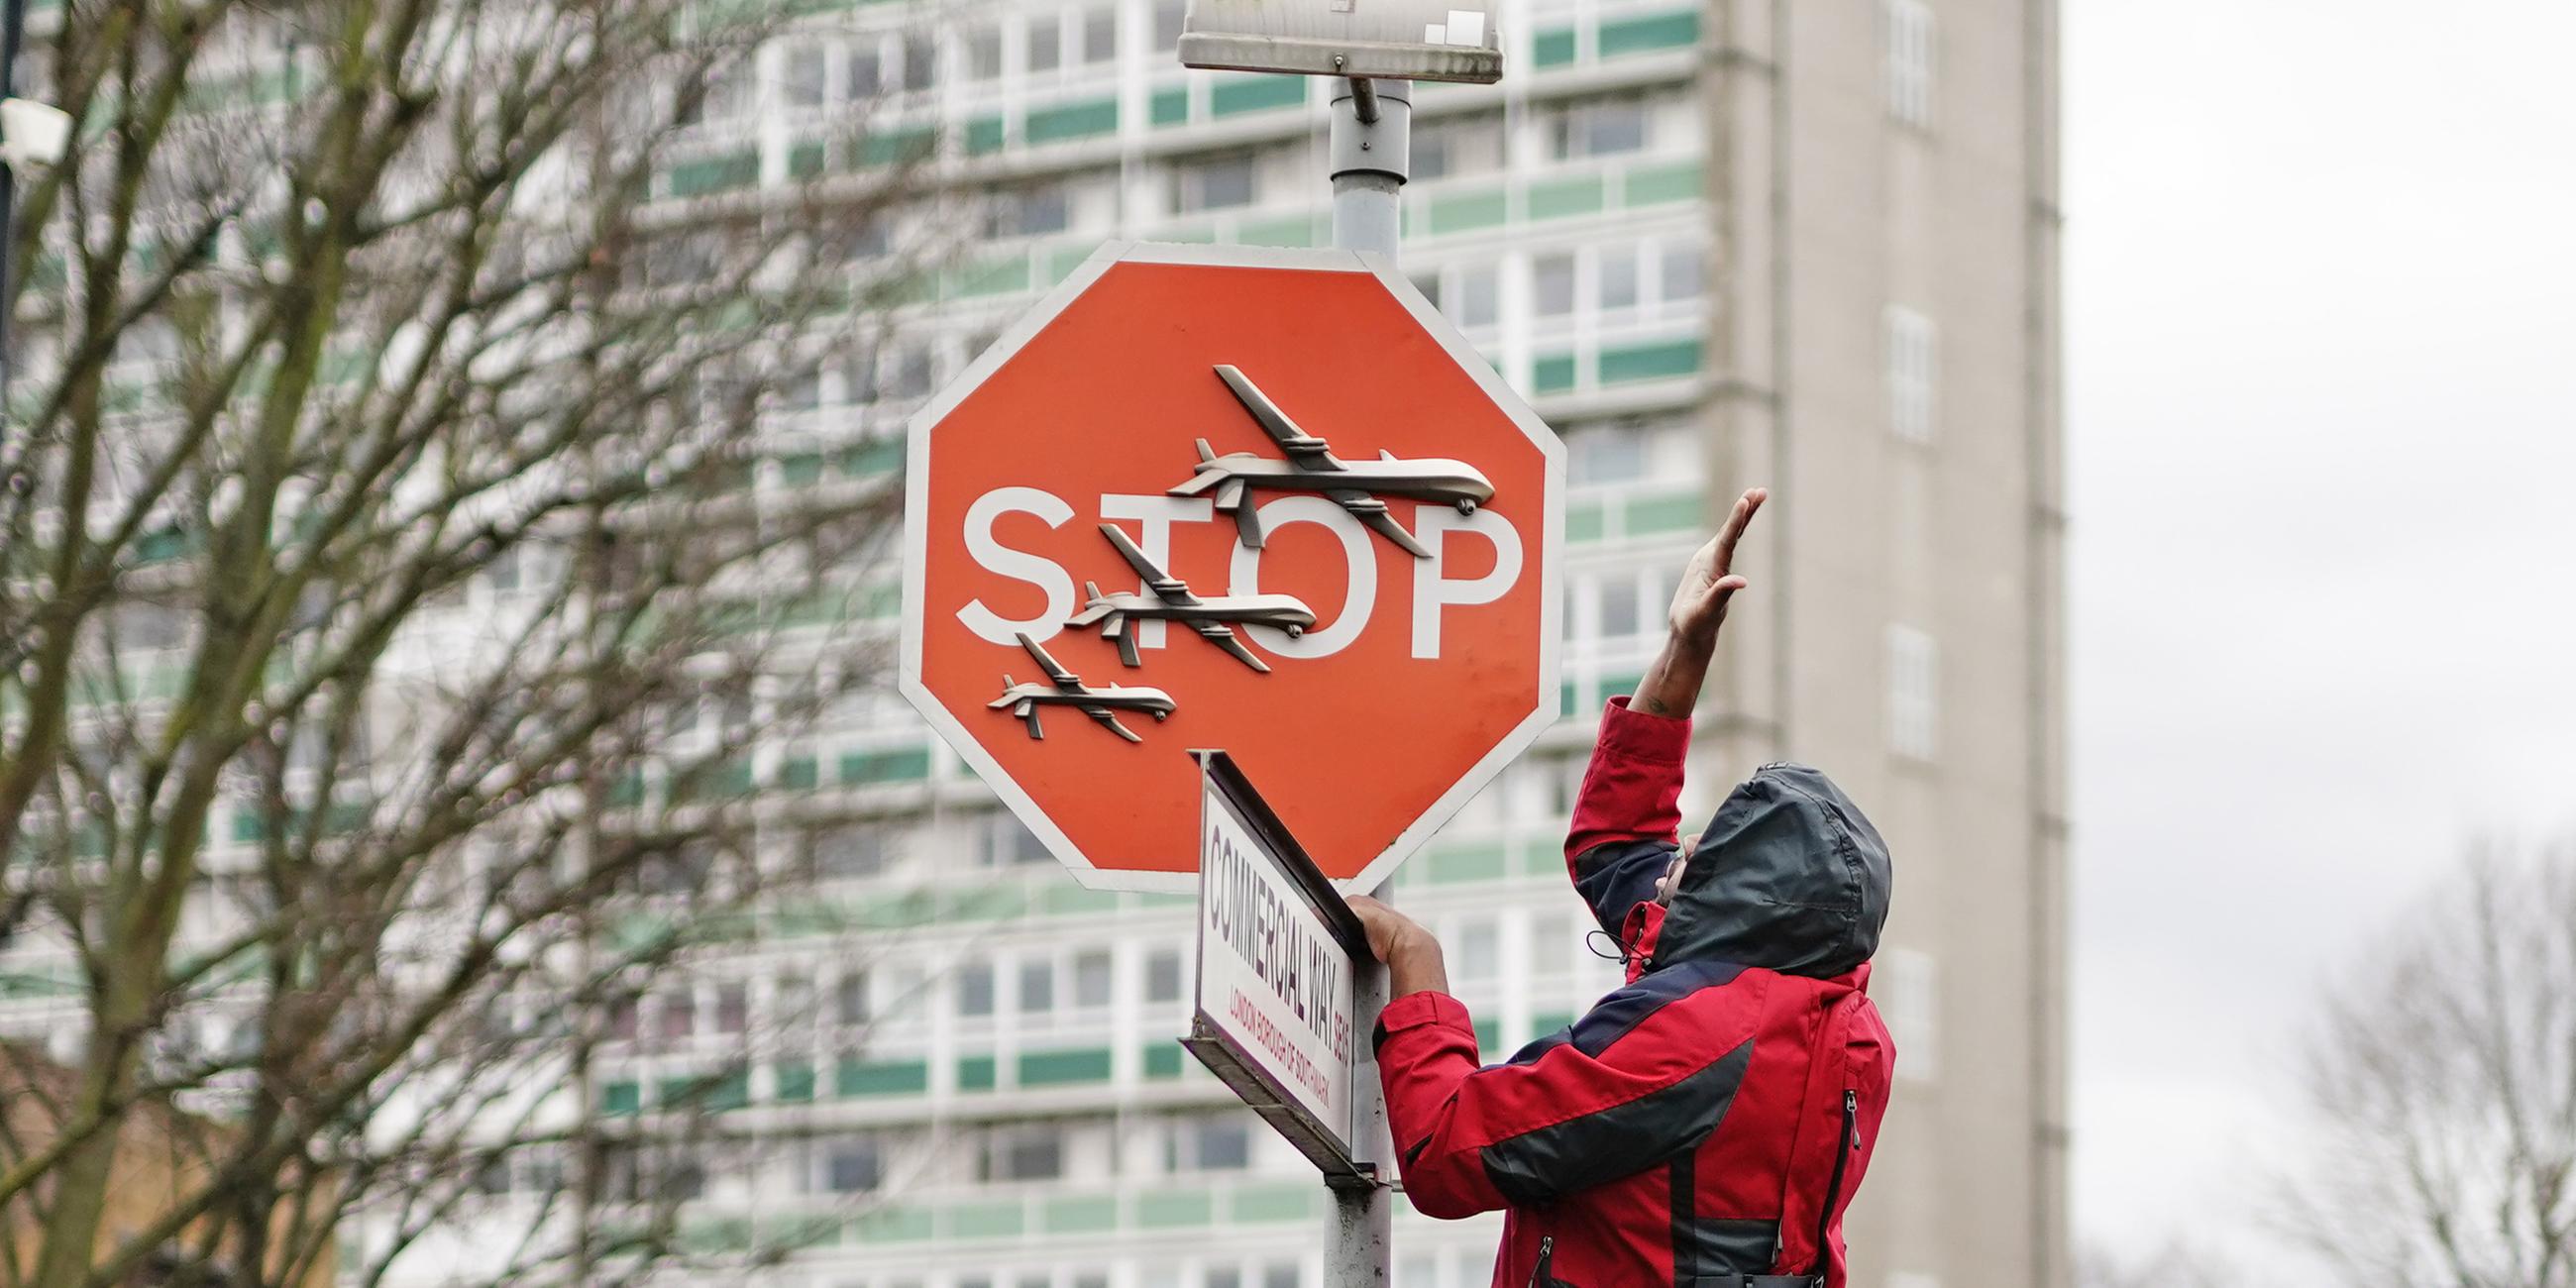 Großbritannien, London: Ein Mann entfernen ein Stoppschild auf dem drei Drohnen gemalt sind. 